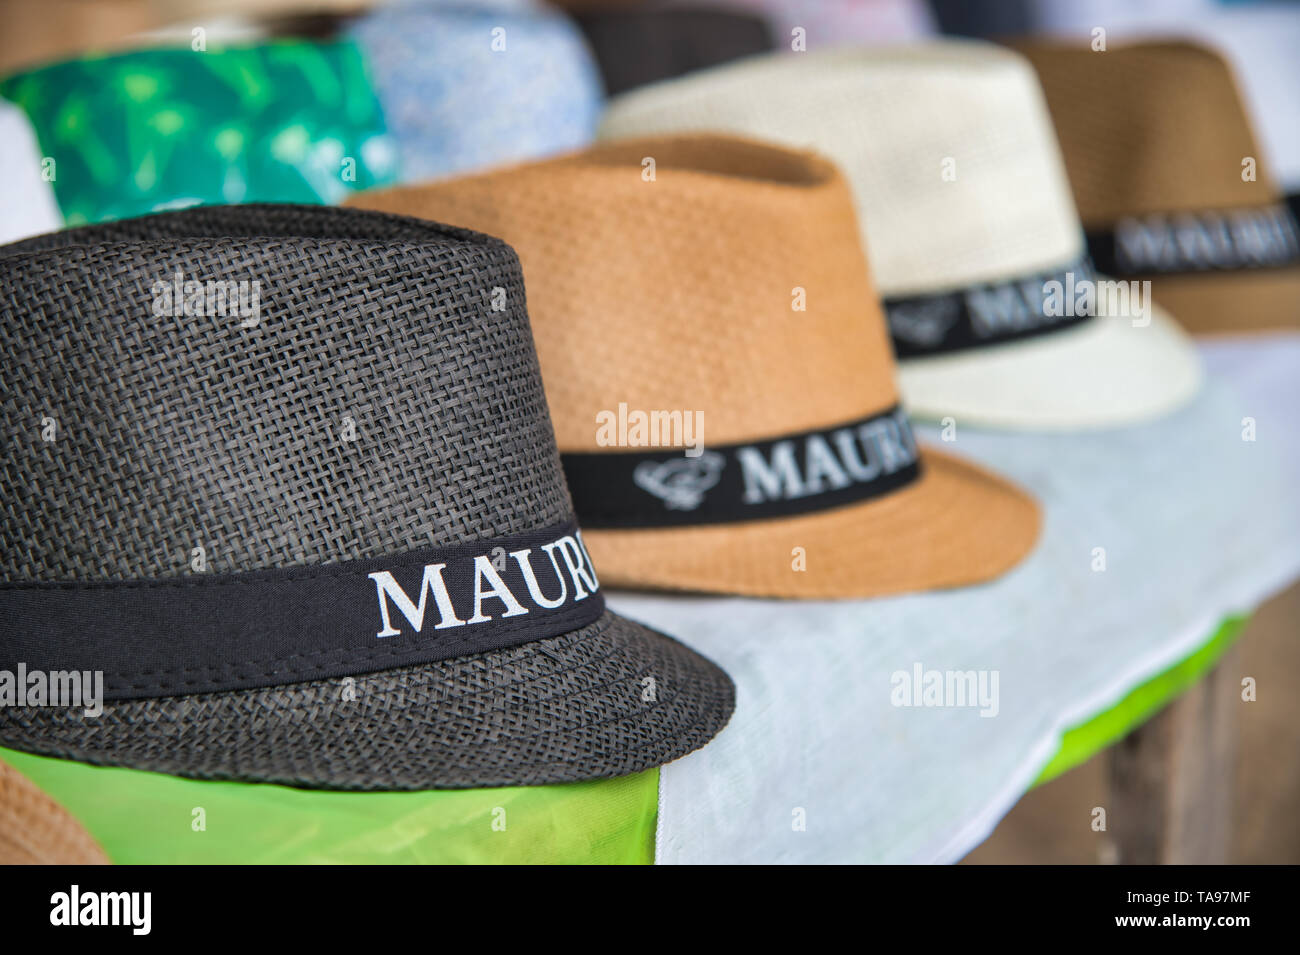 MAURITIUS - Mai 2, 2019: Strohhüte auf Verkauf in einem Shop. Mauritius ist eine berühmte Touristenattraktion für Urlaub am Meer. Stockfoto